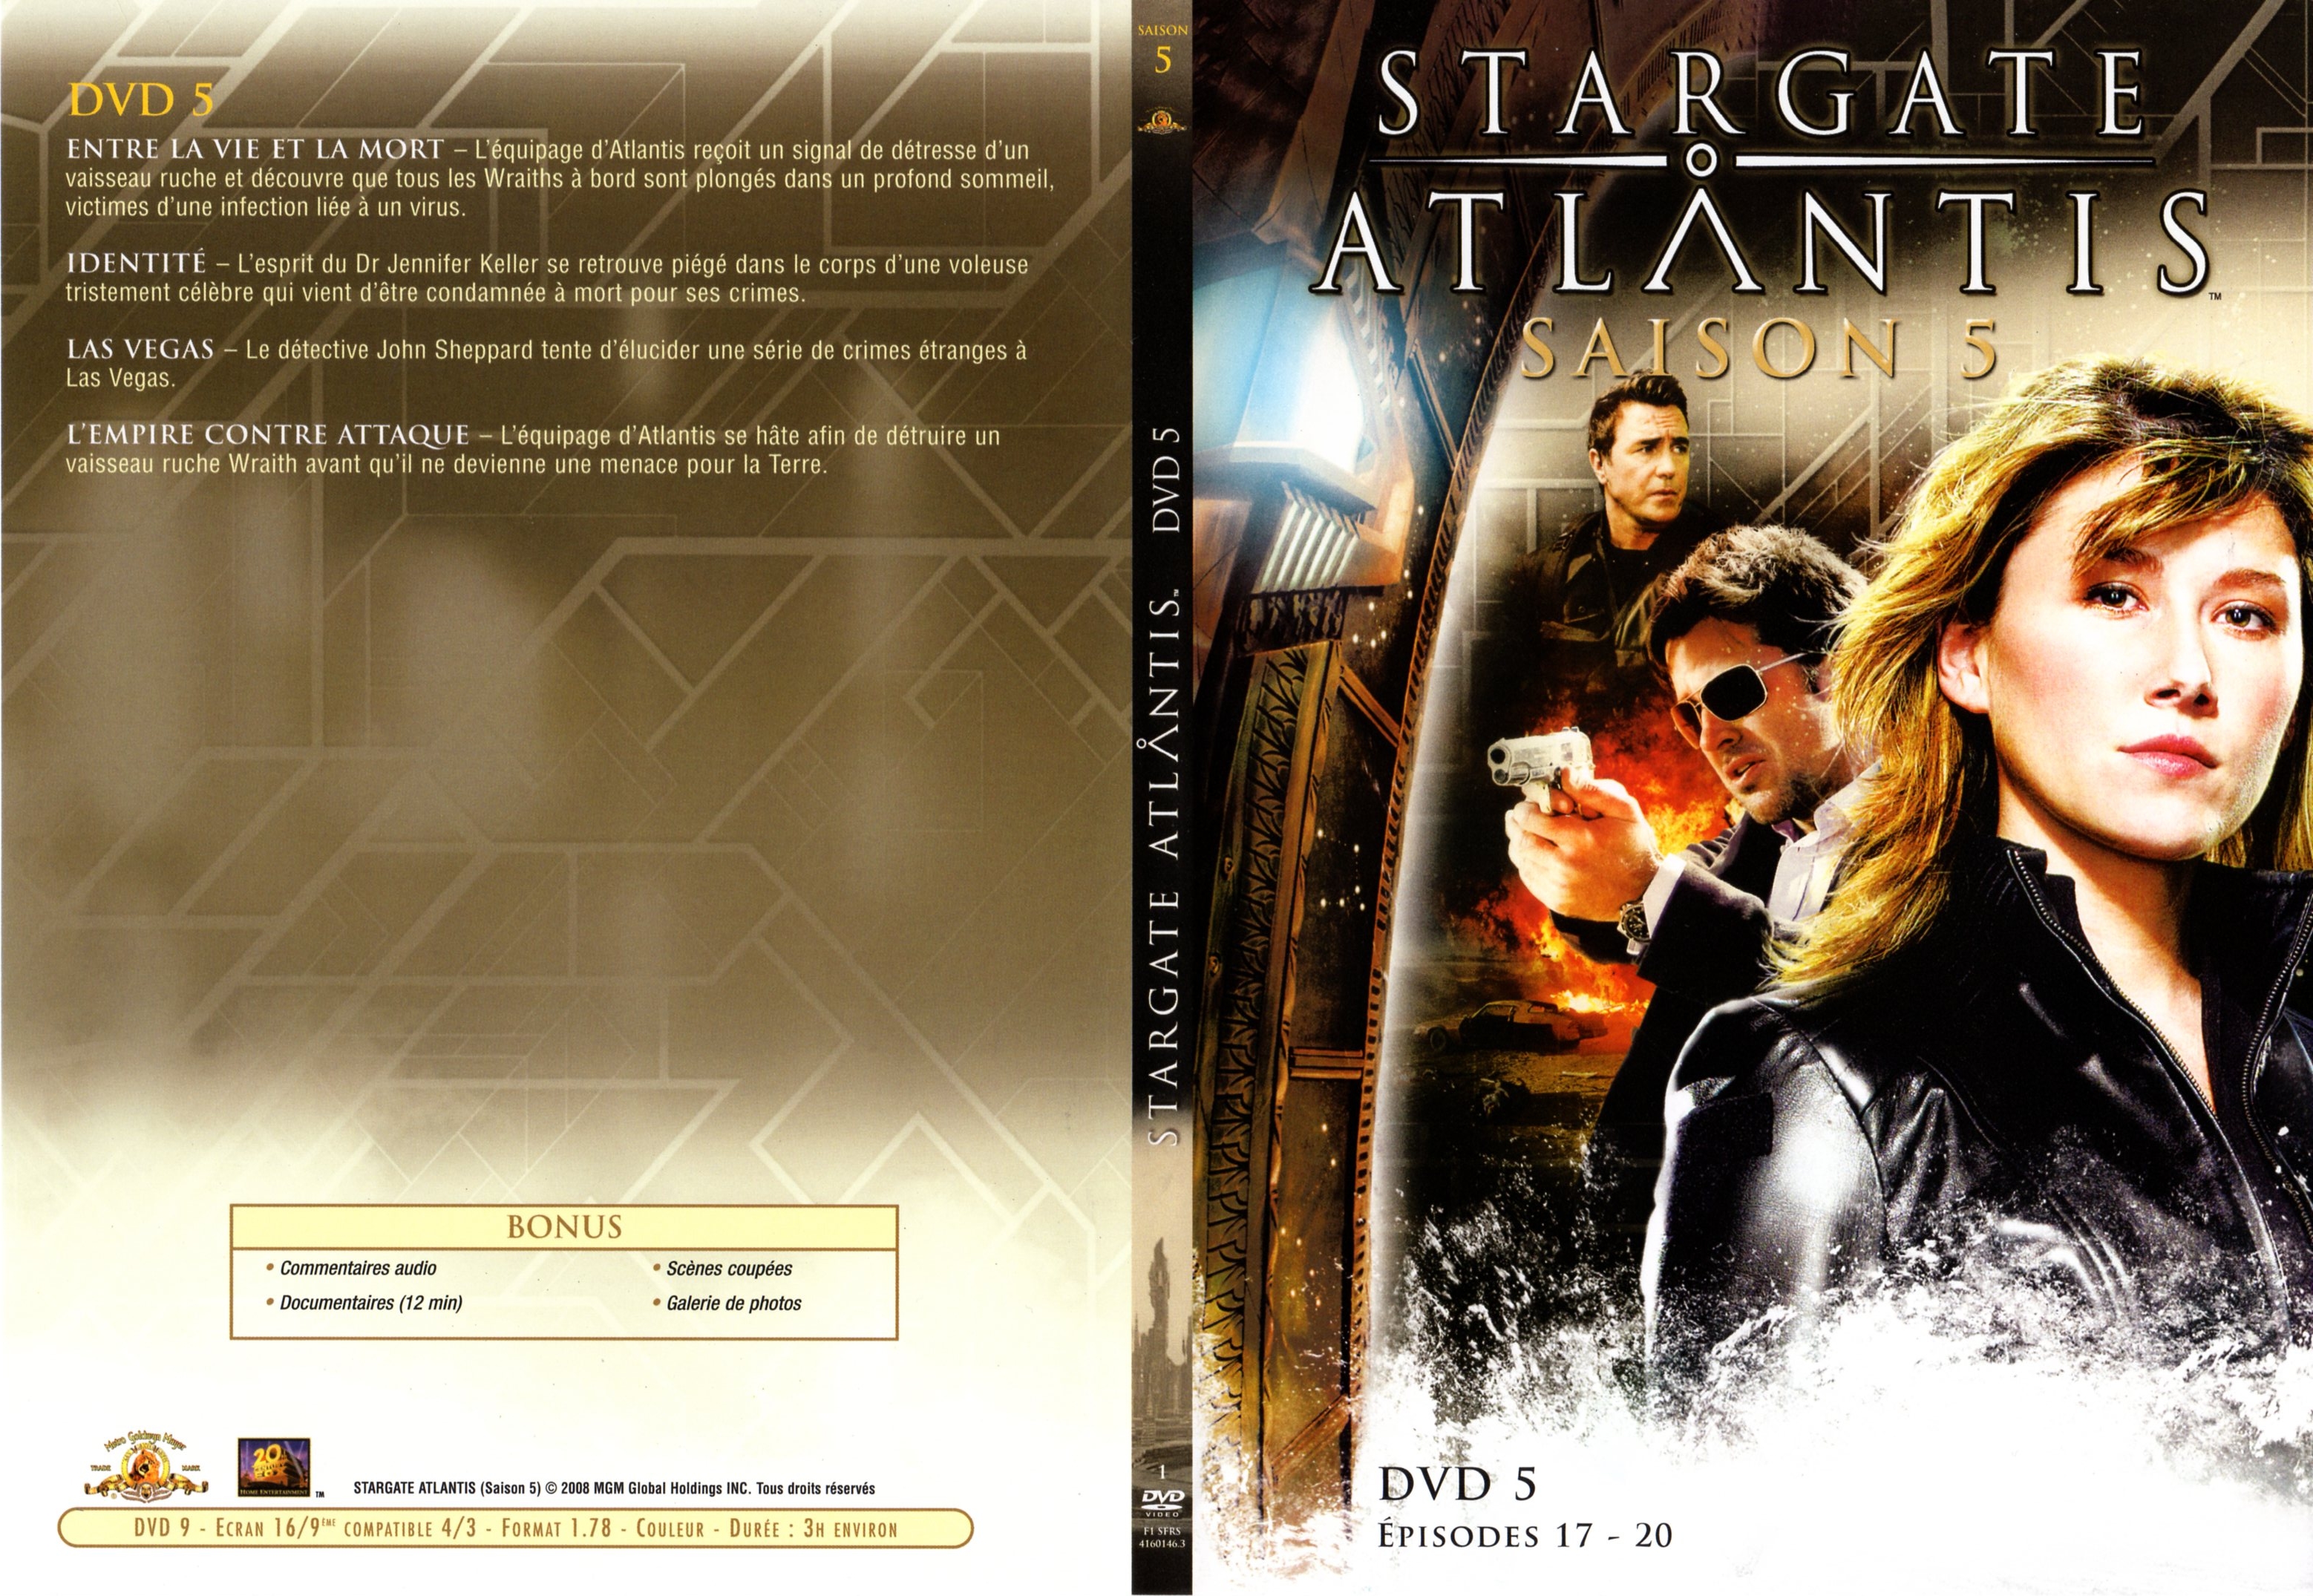 Jaquette DVD Stargate atlantis saison 5 DVD 3